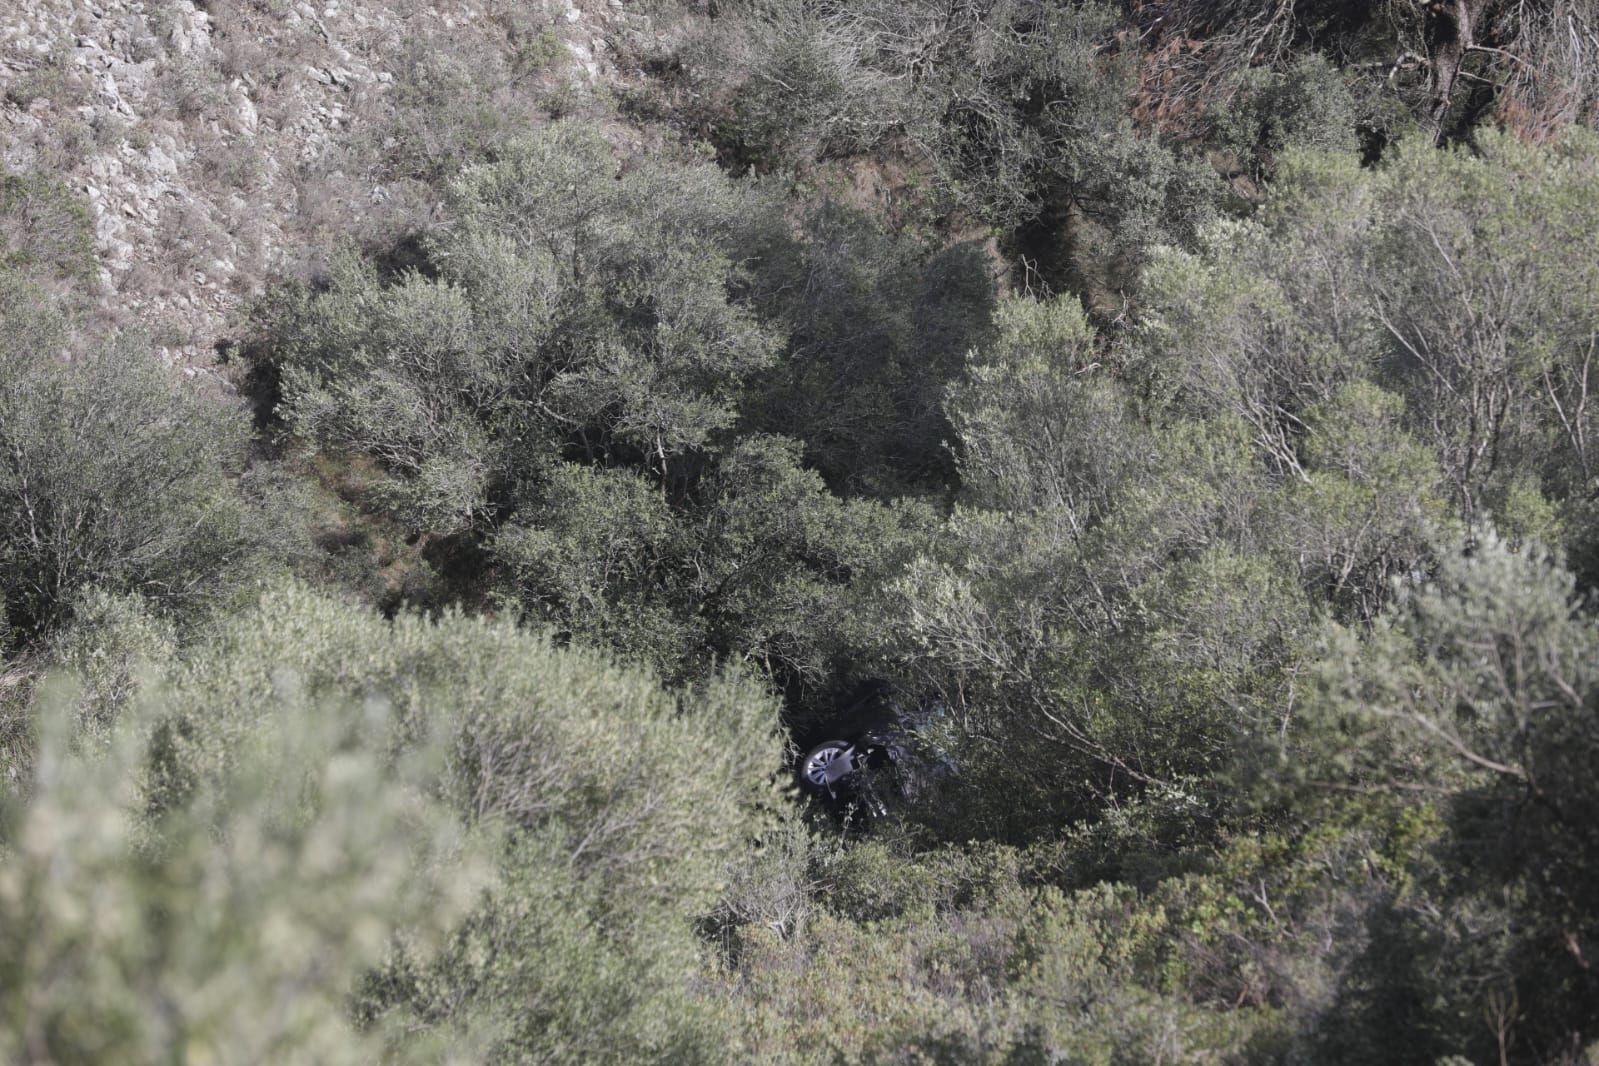 Galería de imágenes del accidente de cinco personas tras caer por un acantilado en Mallorca